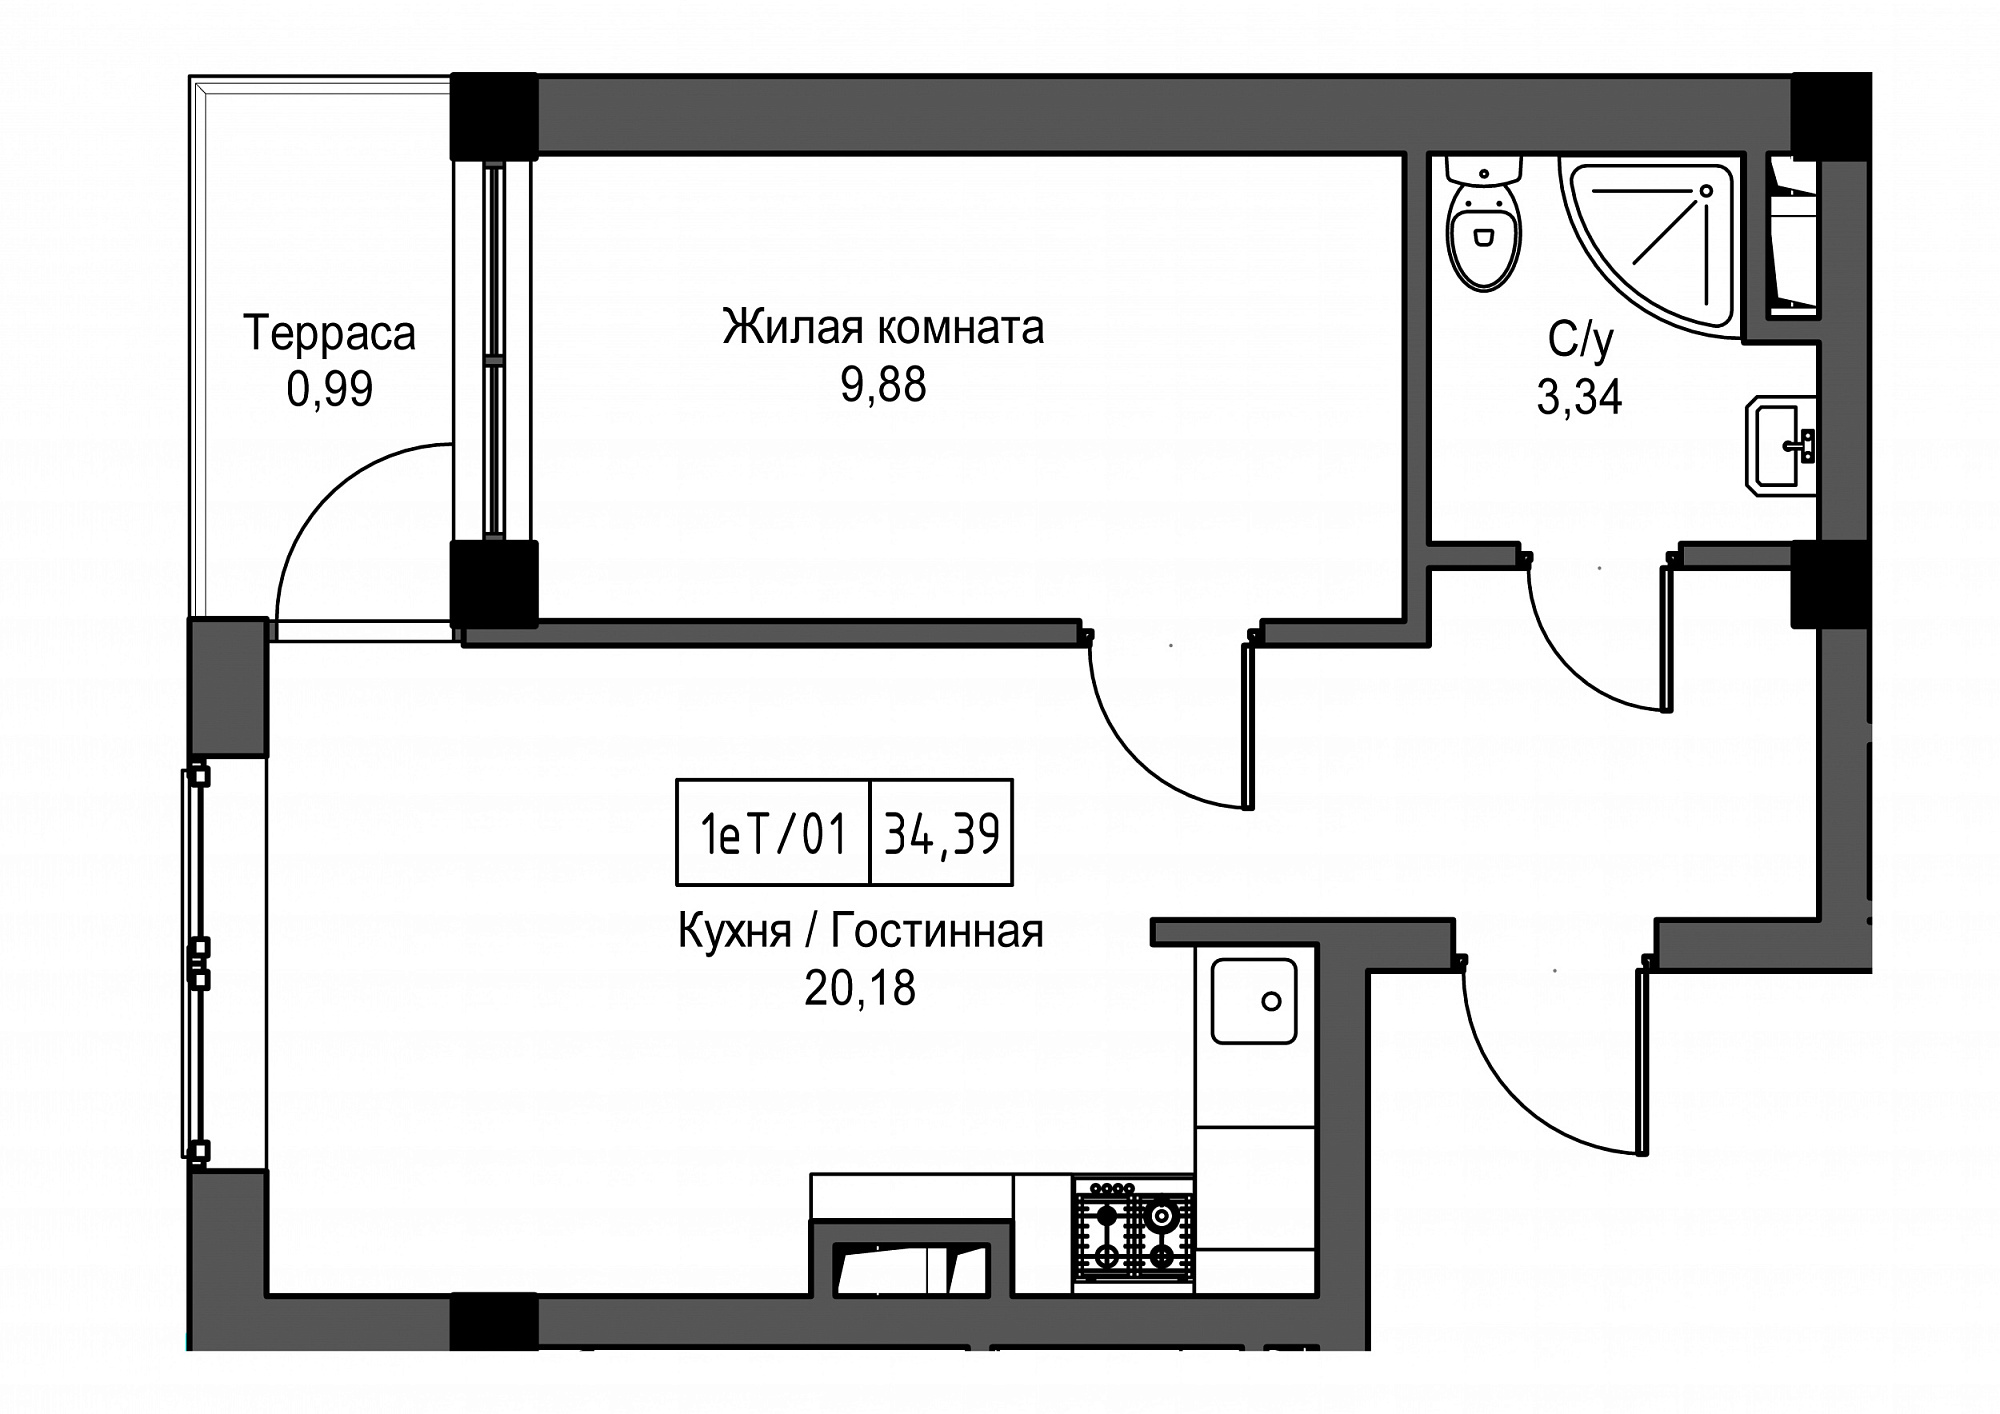 Планировка 1-к квартира площей 34.39м2, UM-002-02/0100.